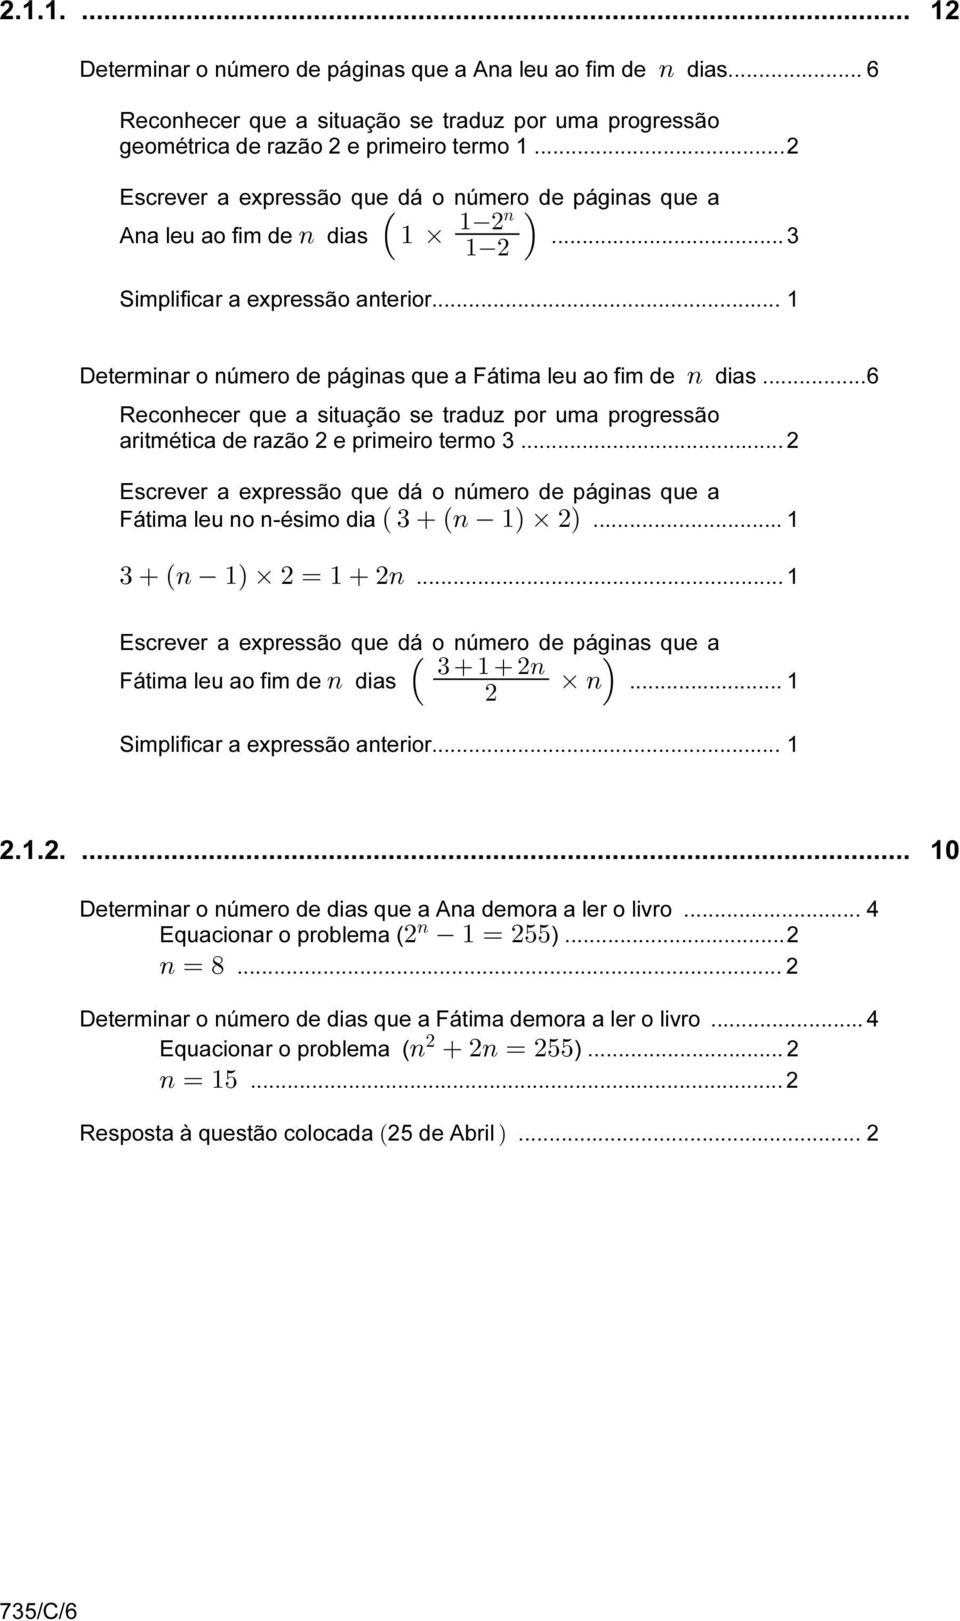 .. 1 Determinar o número de páginas que a Fátima leu ao fim de 8 dias...6 Reconhecer que a situação se traduz por uma progressão aritmética de razão 2 e primeiro termo 3.